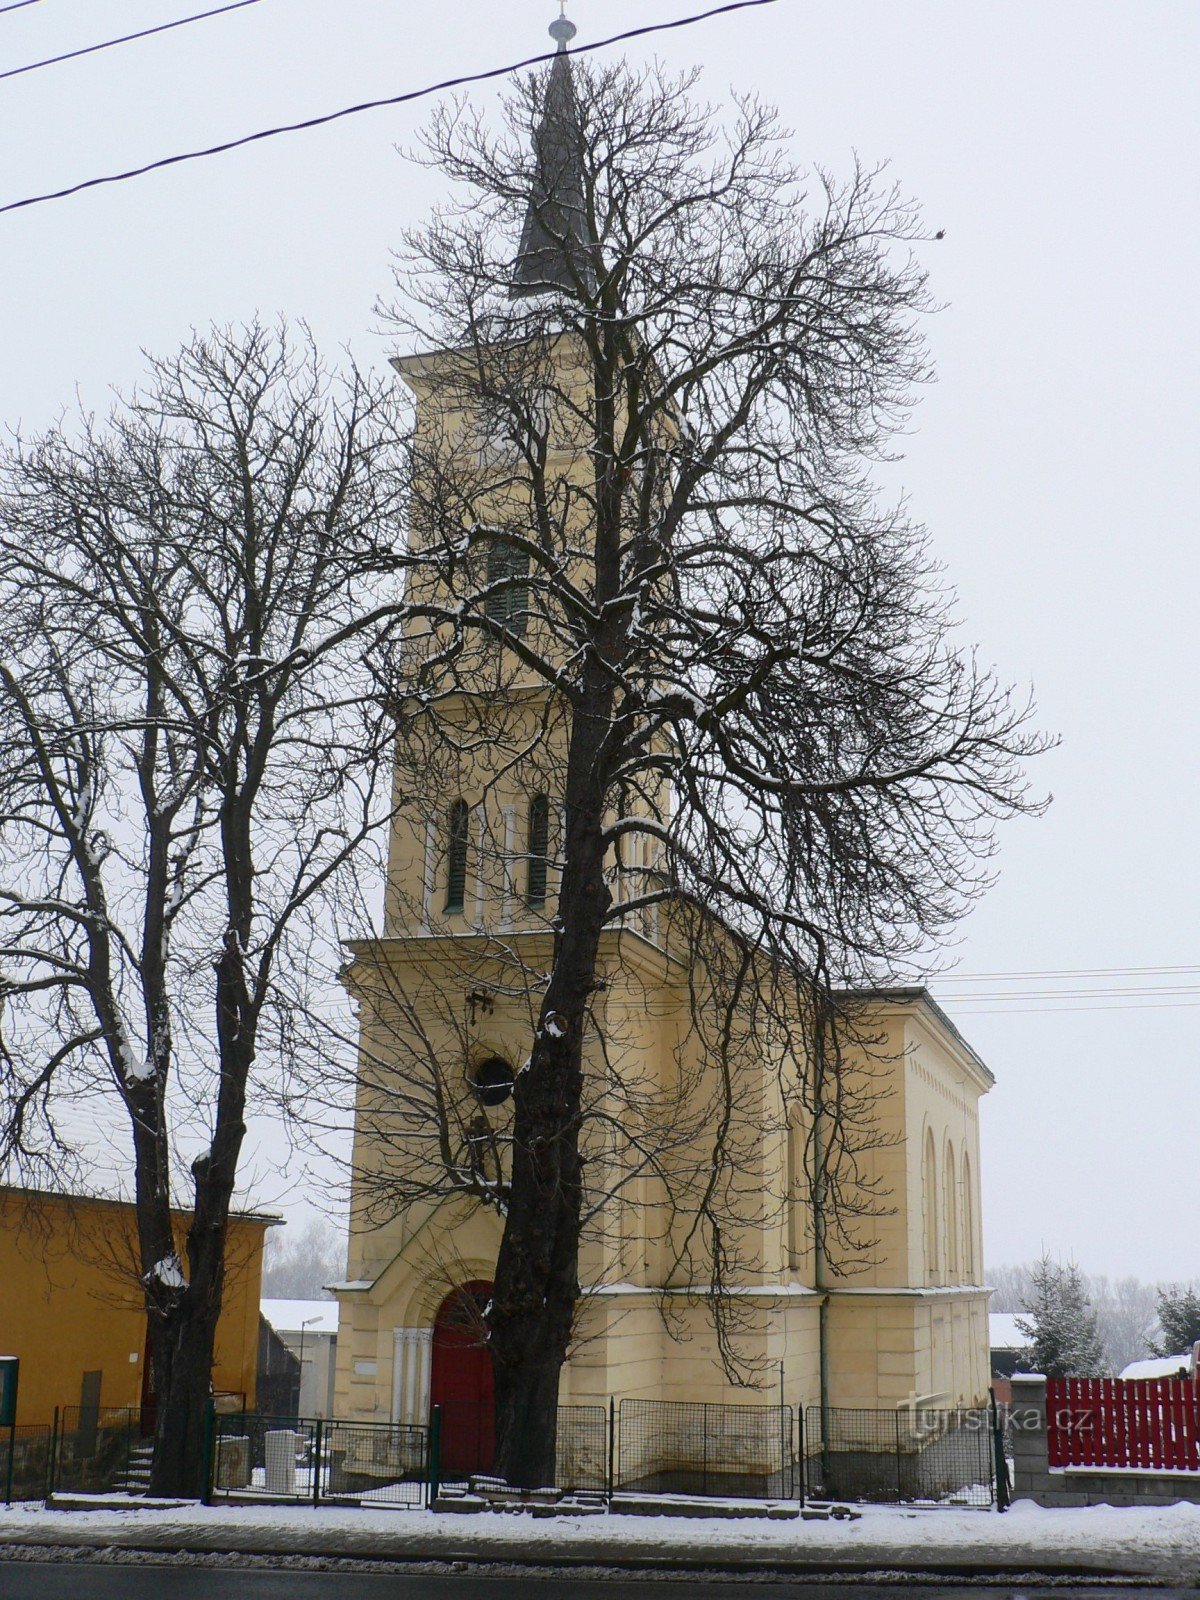 cerkev je bila slabo fotografirana - skrita je za drevesi